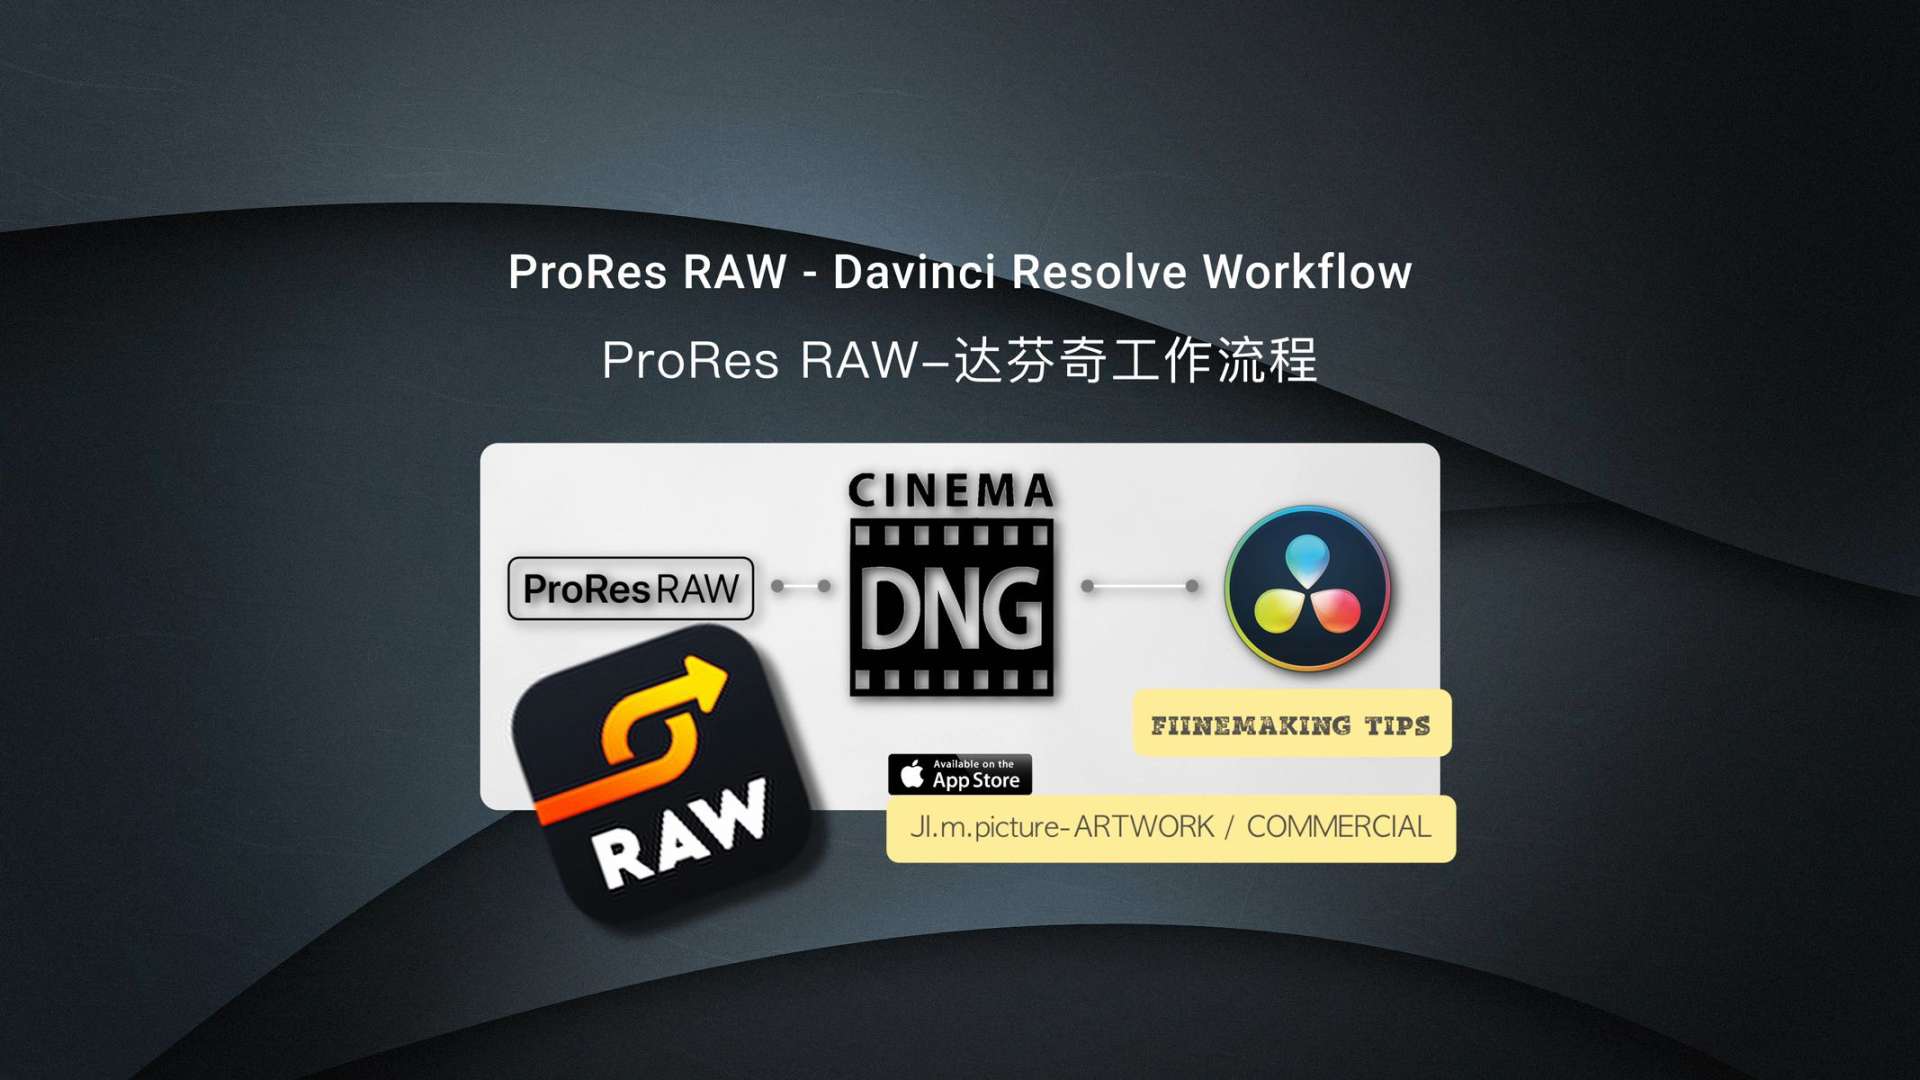 ProRes RAW-达芬奇环境工作流程介绍